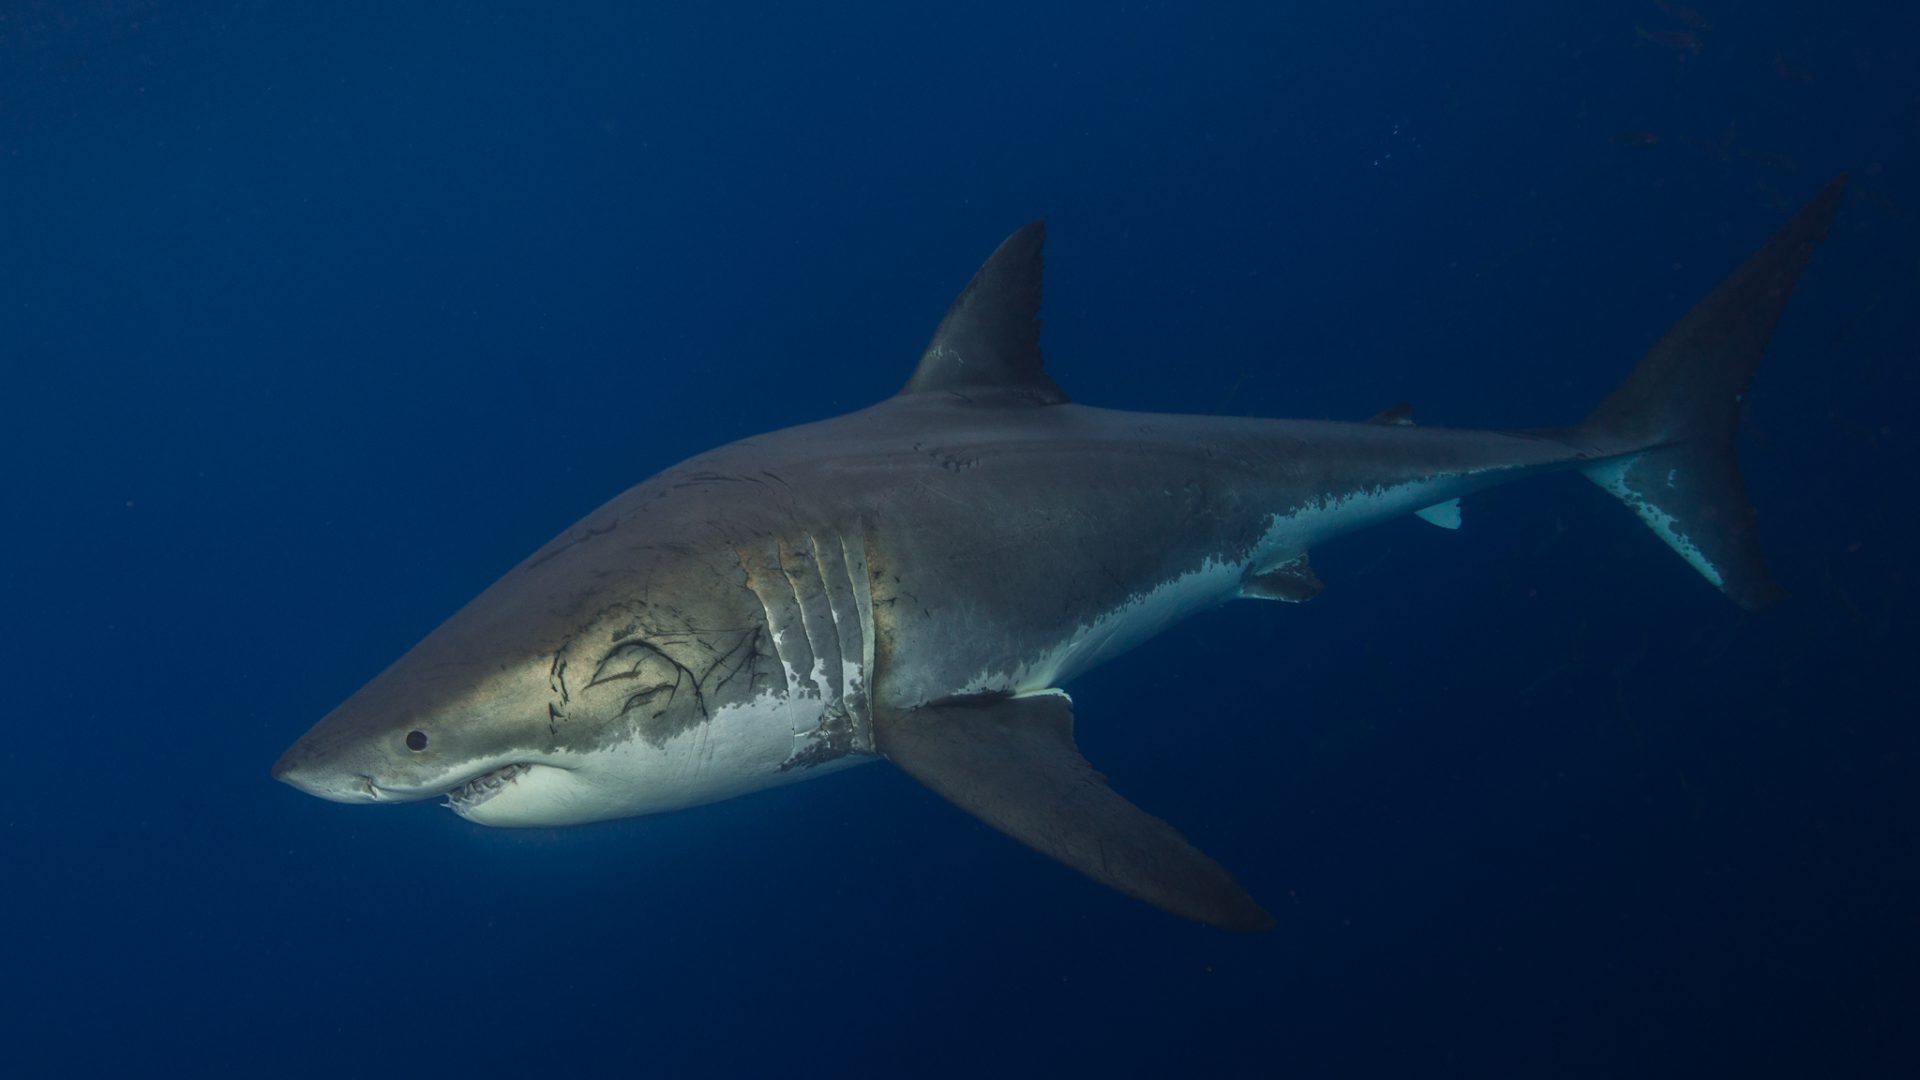 Die Umweltschützer von "SharkProject" sind sich sicher: Haie gehören in keinem Fall ins Aquarium – auch nicht zu Bildungszwecken.